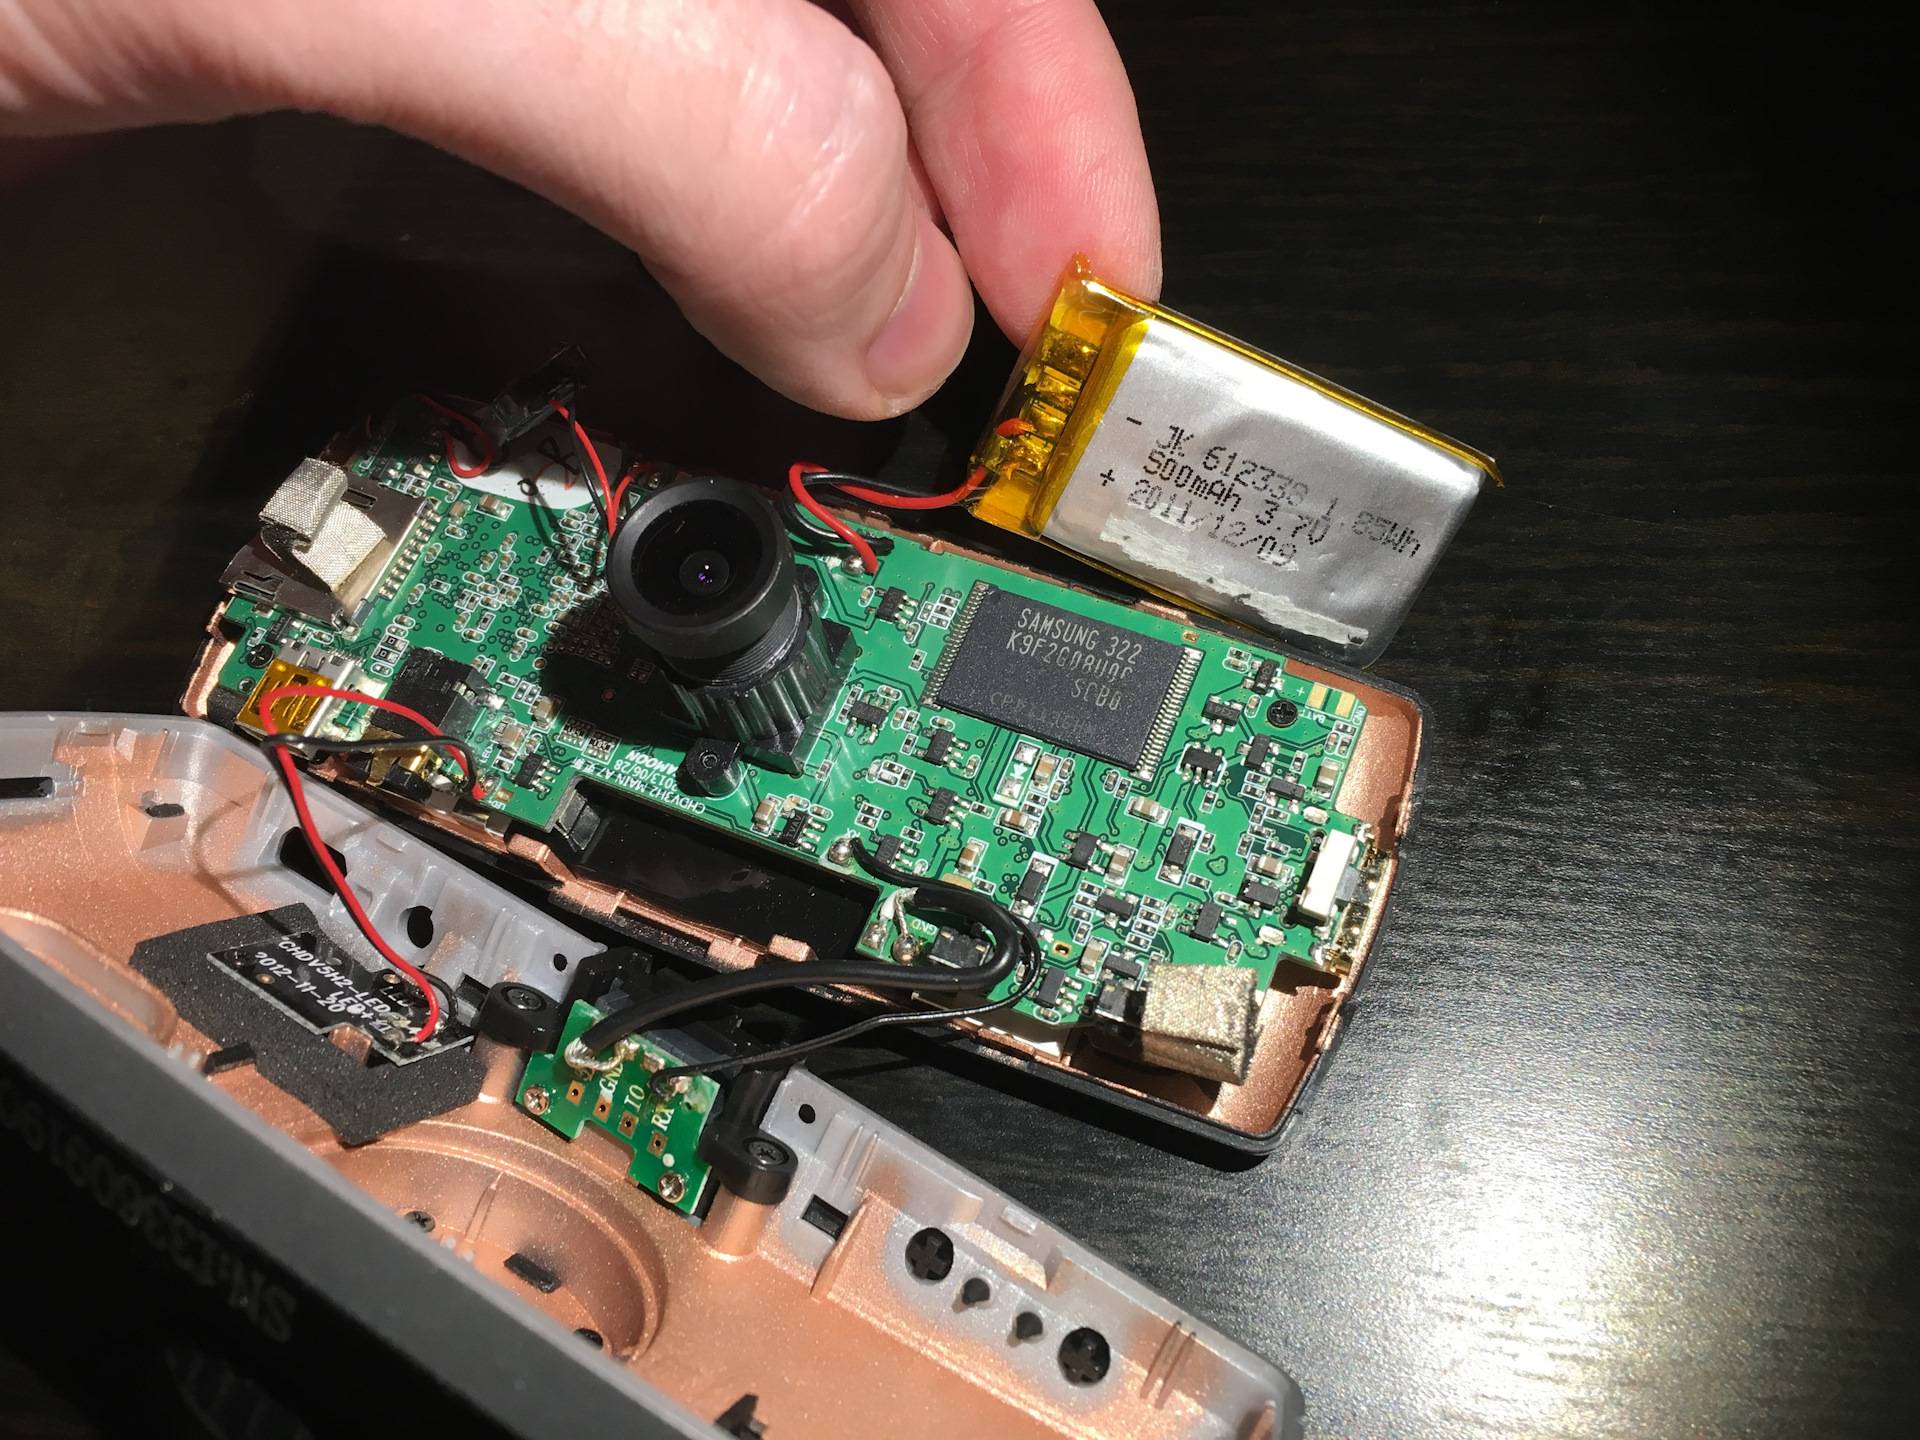 Как самостоятельно произвести ремонт автомобильного видеорегистратора?